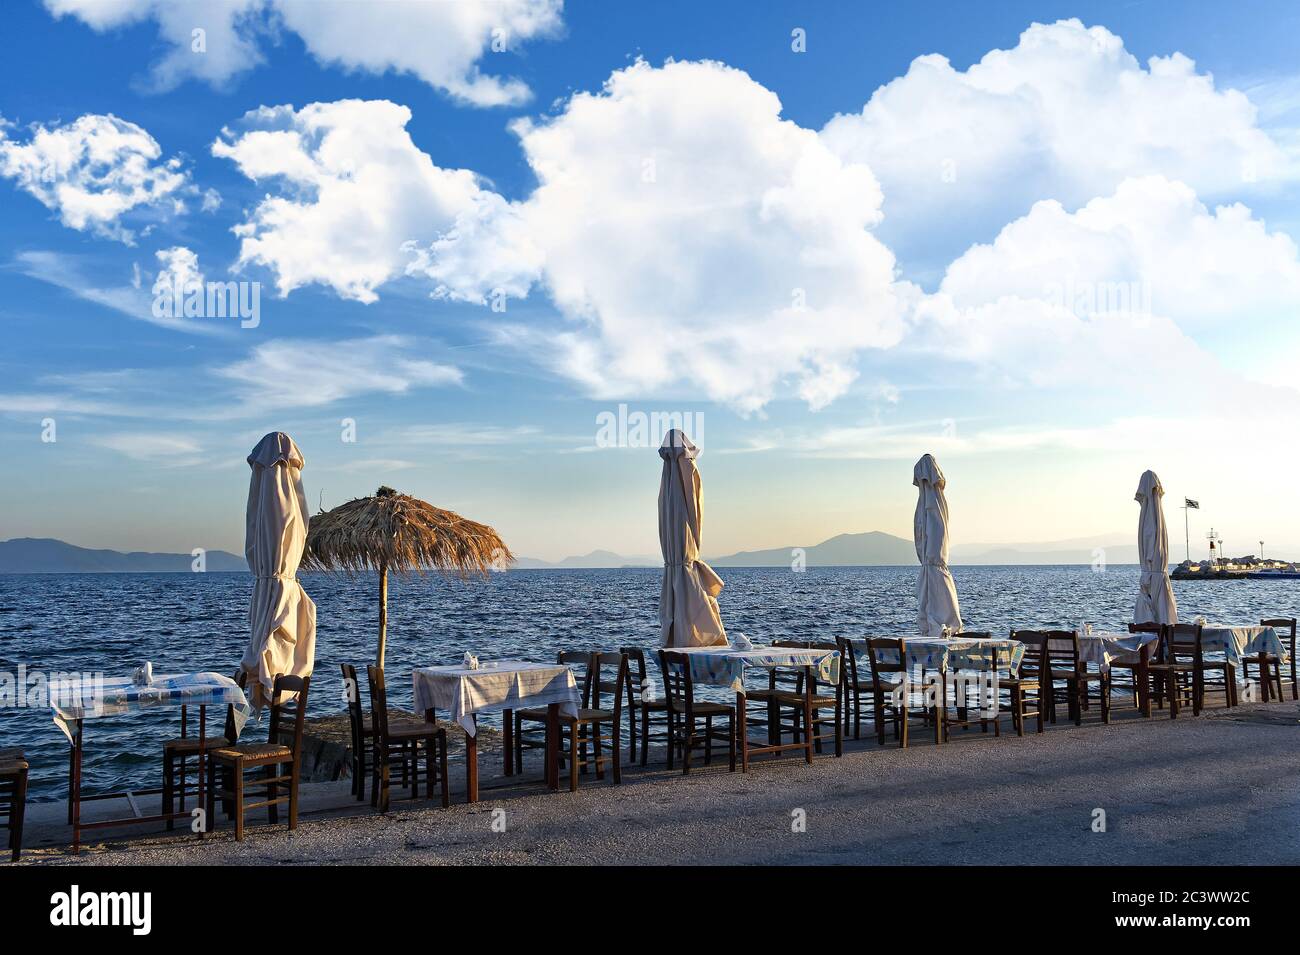 Mediterrane Meereslandschaft, griechische Tavernen Tische und Sonnenschirme Stockfoto